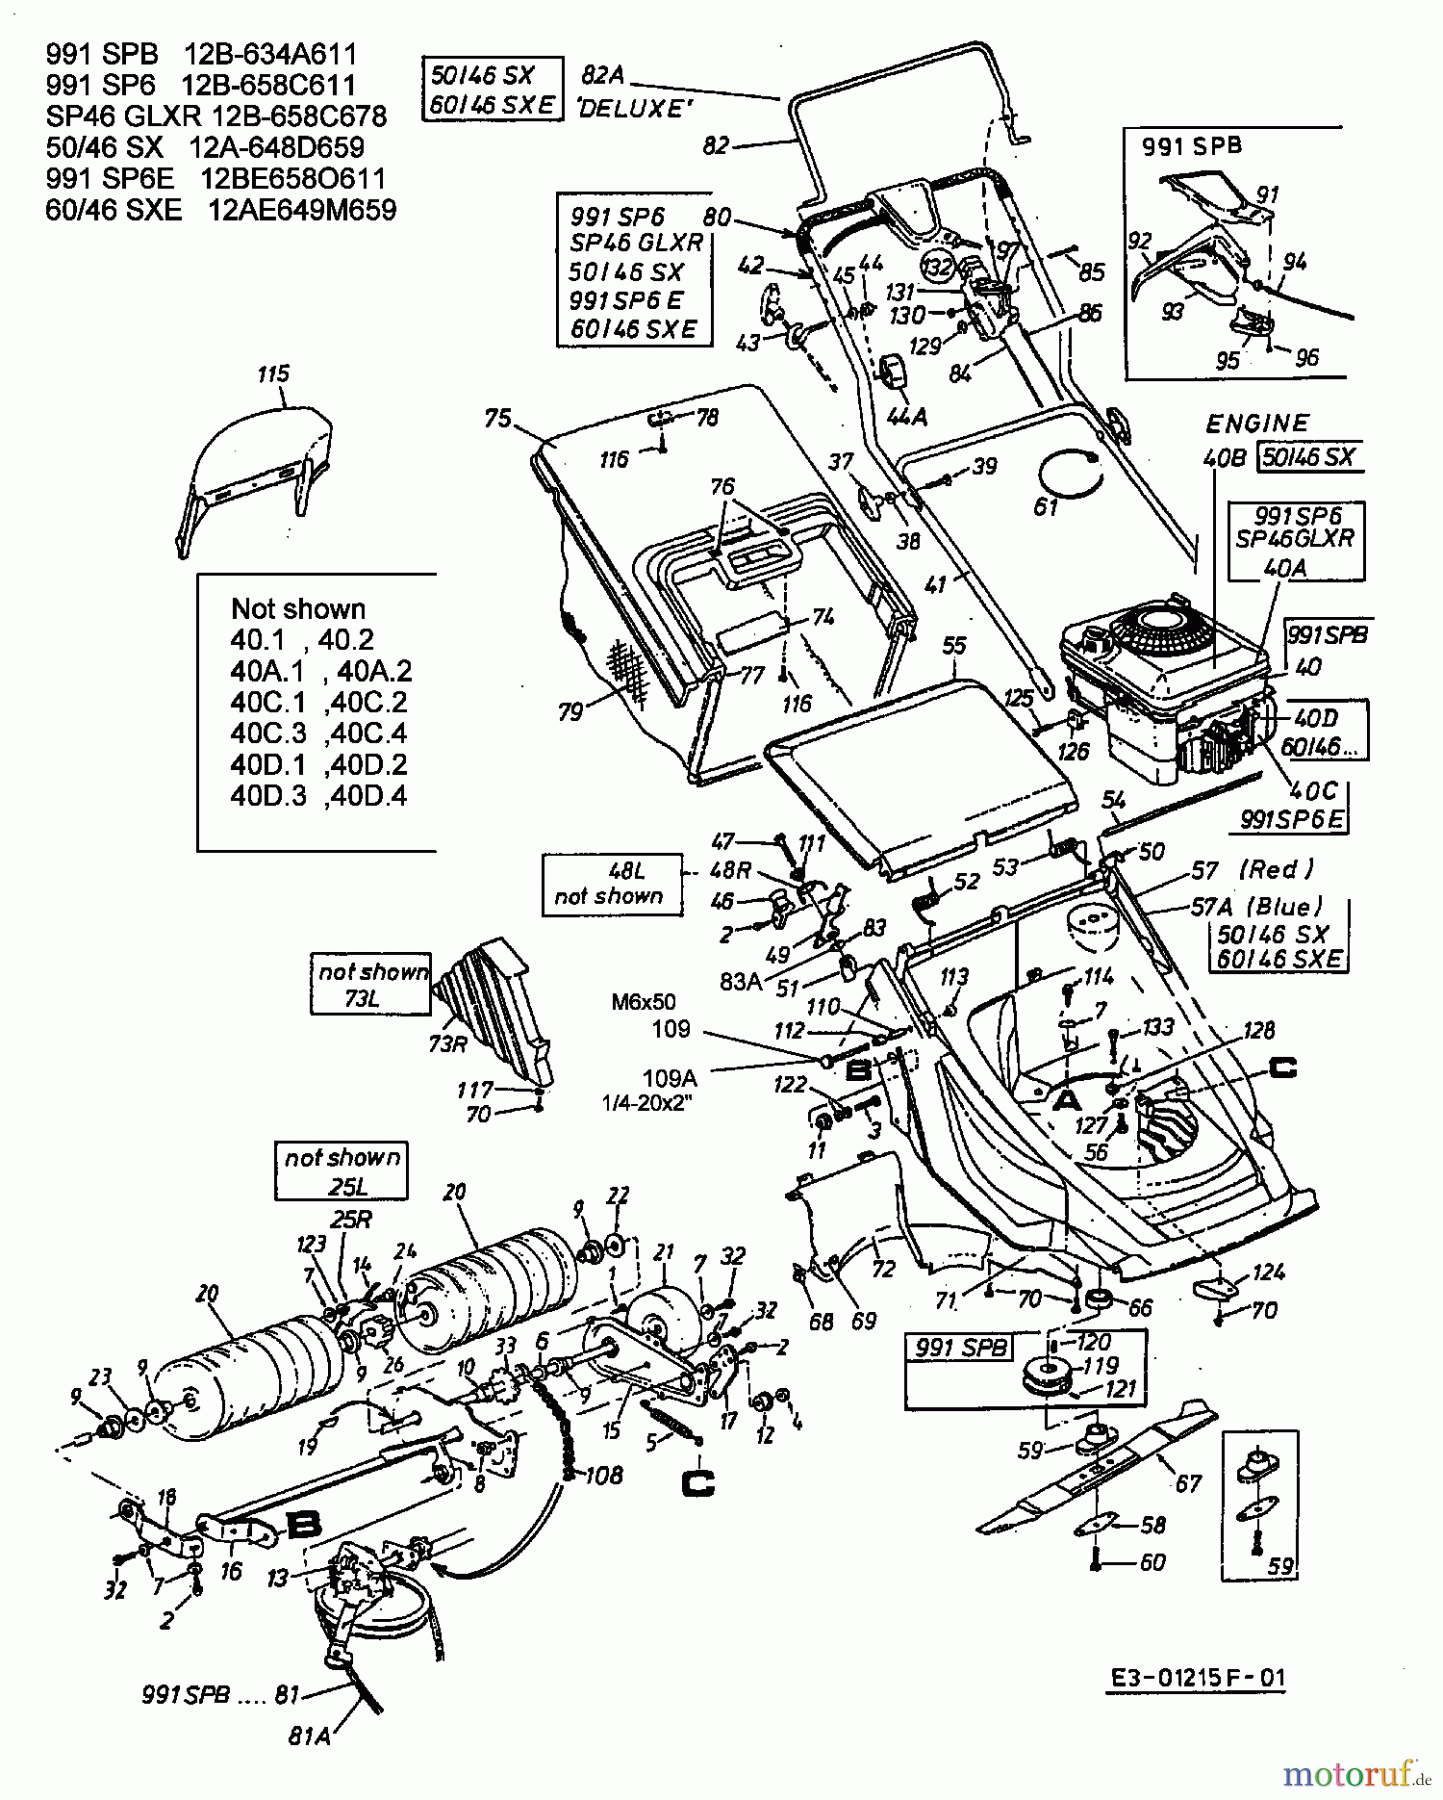  Lawnflite Motormäher mit Antrieb 991 SPB 12B-634A611  (2003) Grundgerät